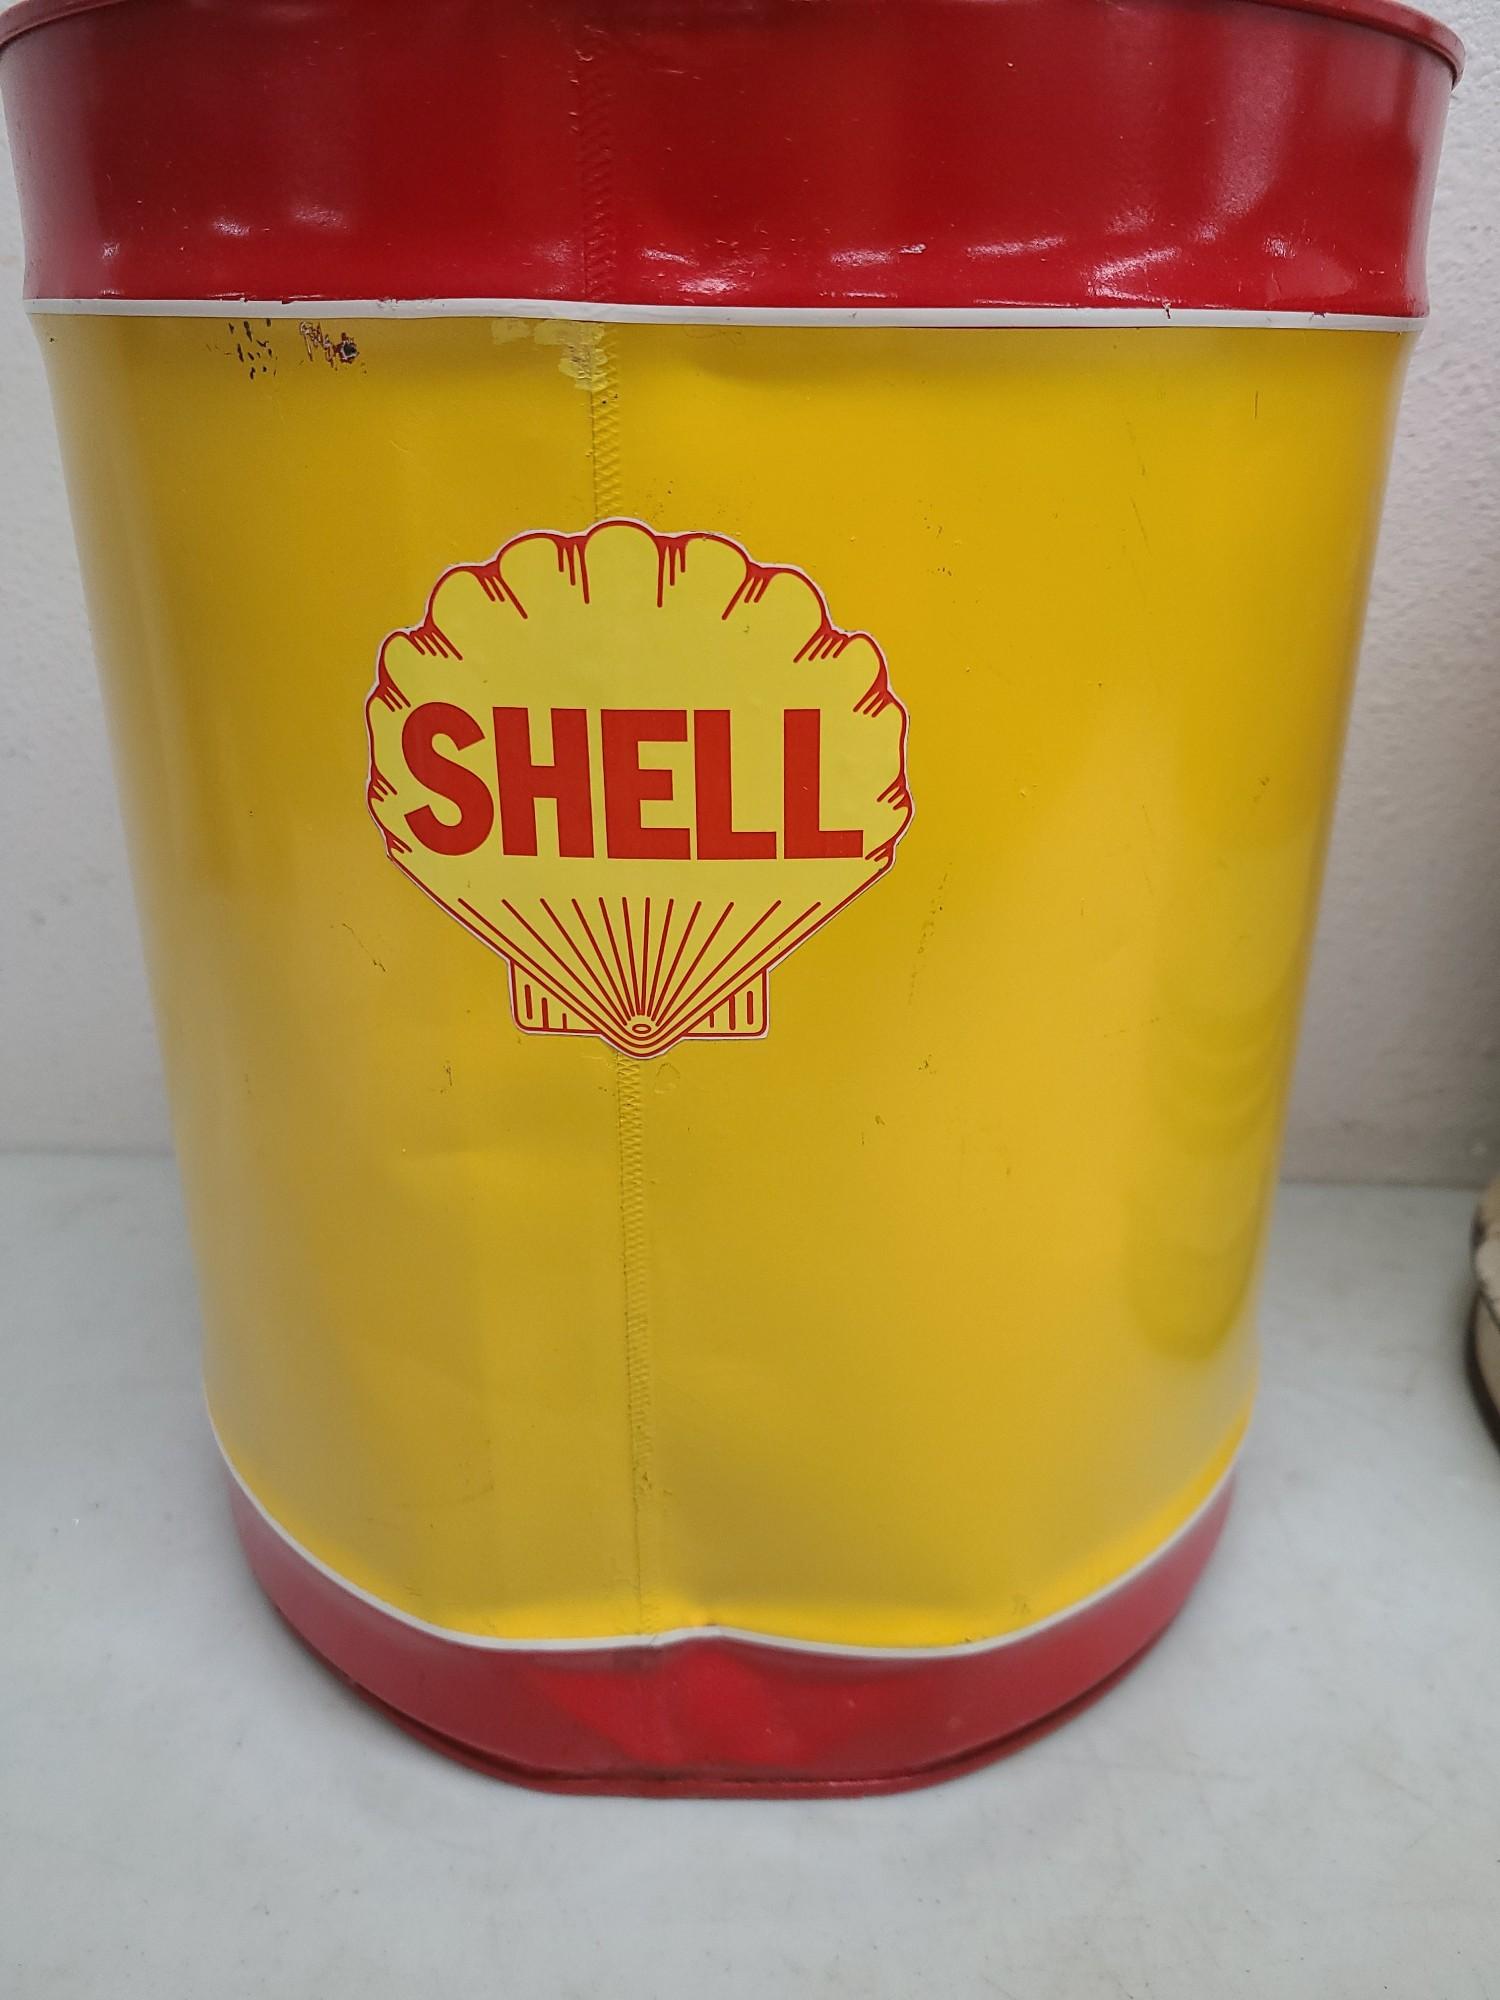 Polarine 5 Gallon Oil Can, Shell 5 Gallon Gas Can.